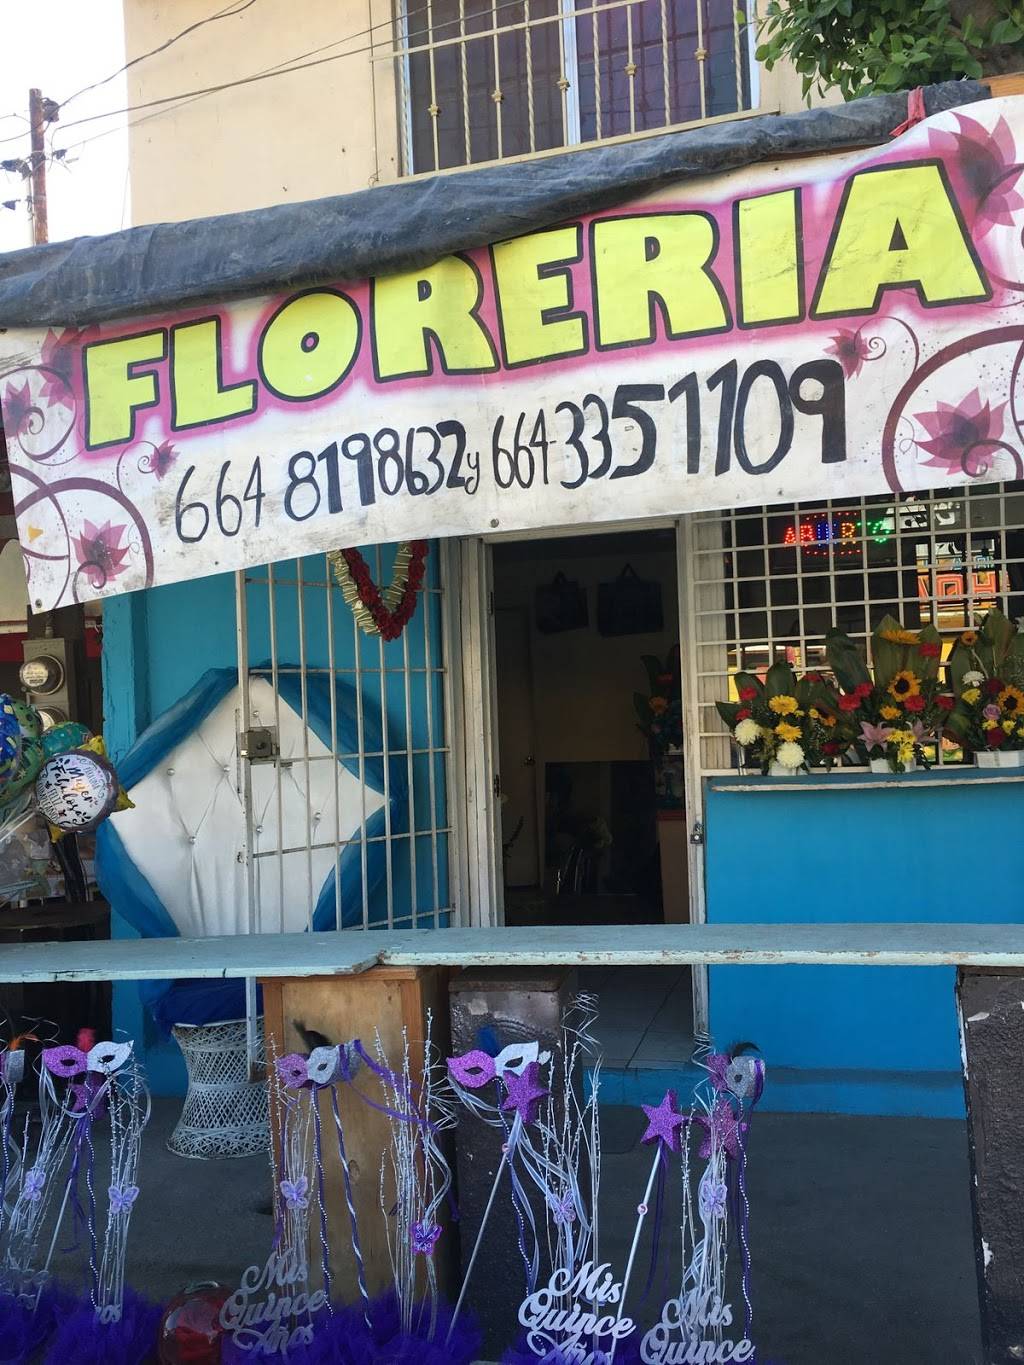 Florería d’ Javis | Laurel 9937, Sevilla Residencial, El Florido 1ra y 2da Secc, 22205 Tijuana, B.C., Mexico | Phone: 664 819 8632